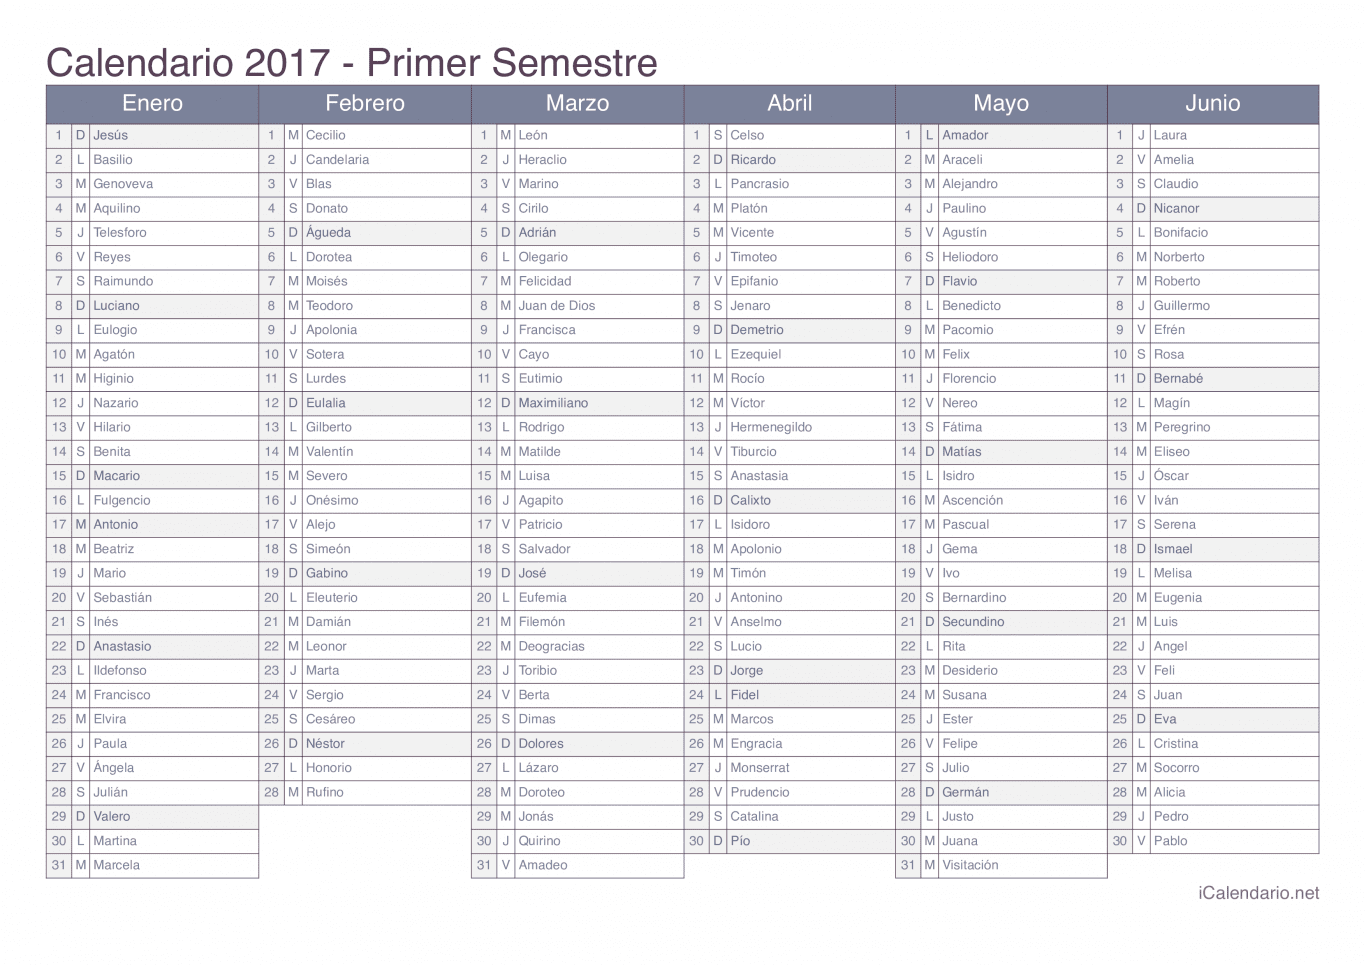 Calendario por semestre 2017 com festa do dia - Office